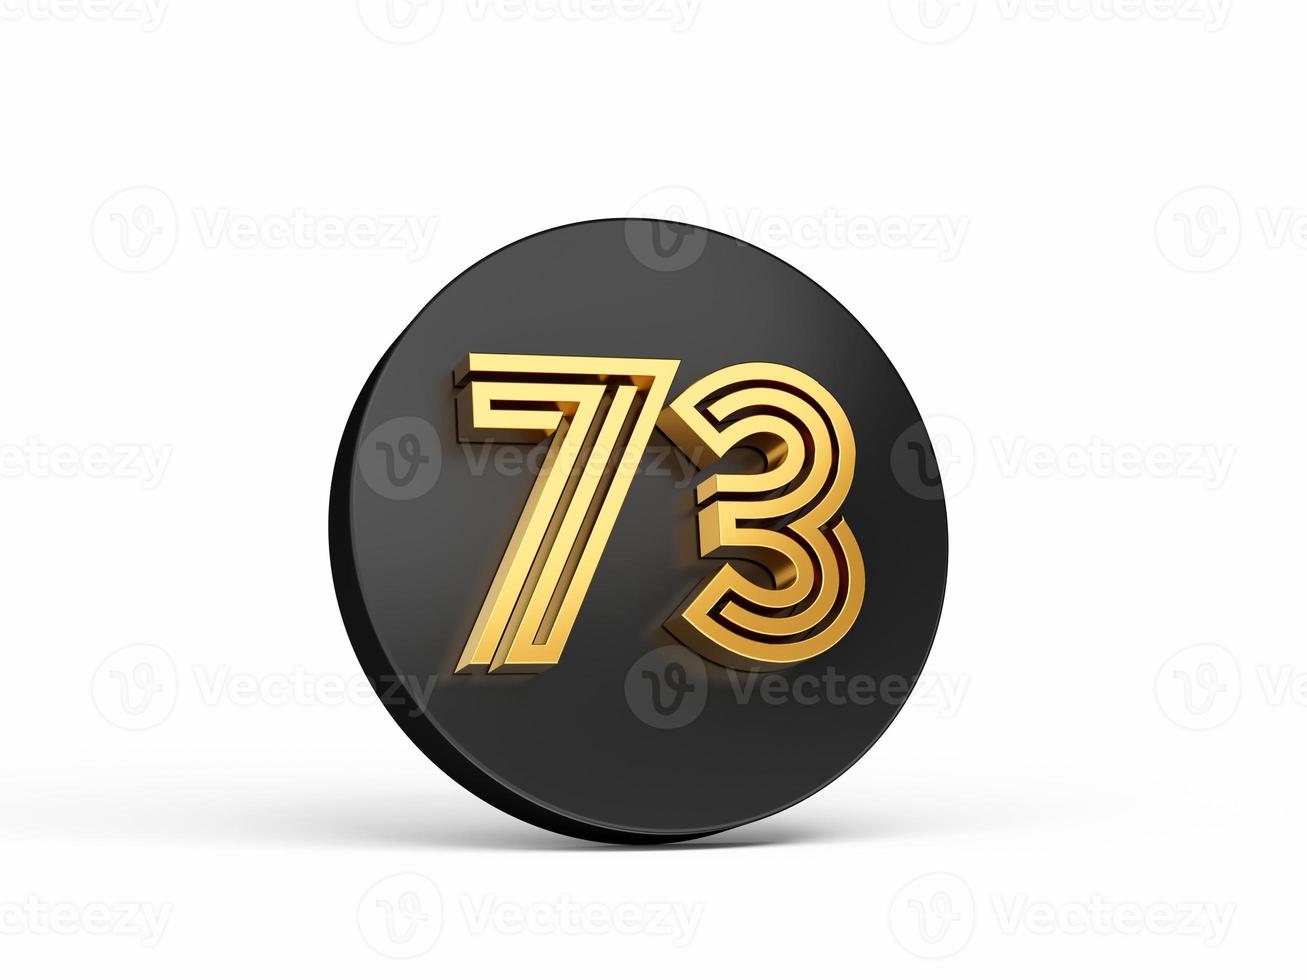 koninklijke gouden moderne lettertype. elite 3D-cijferige letter 73 drieënzeventig op zwart 3D-knoppictogram 3d illustratie foto